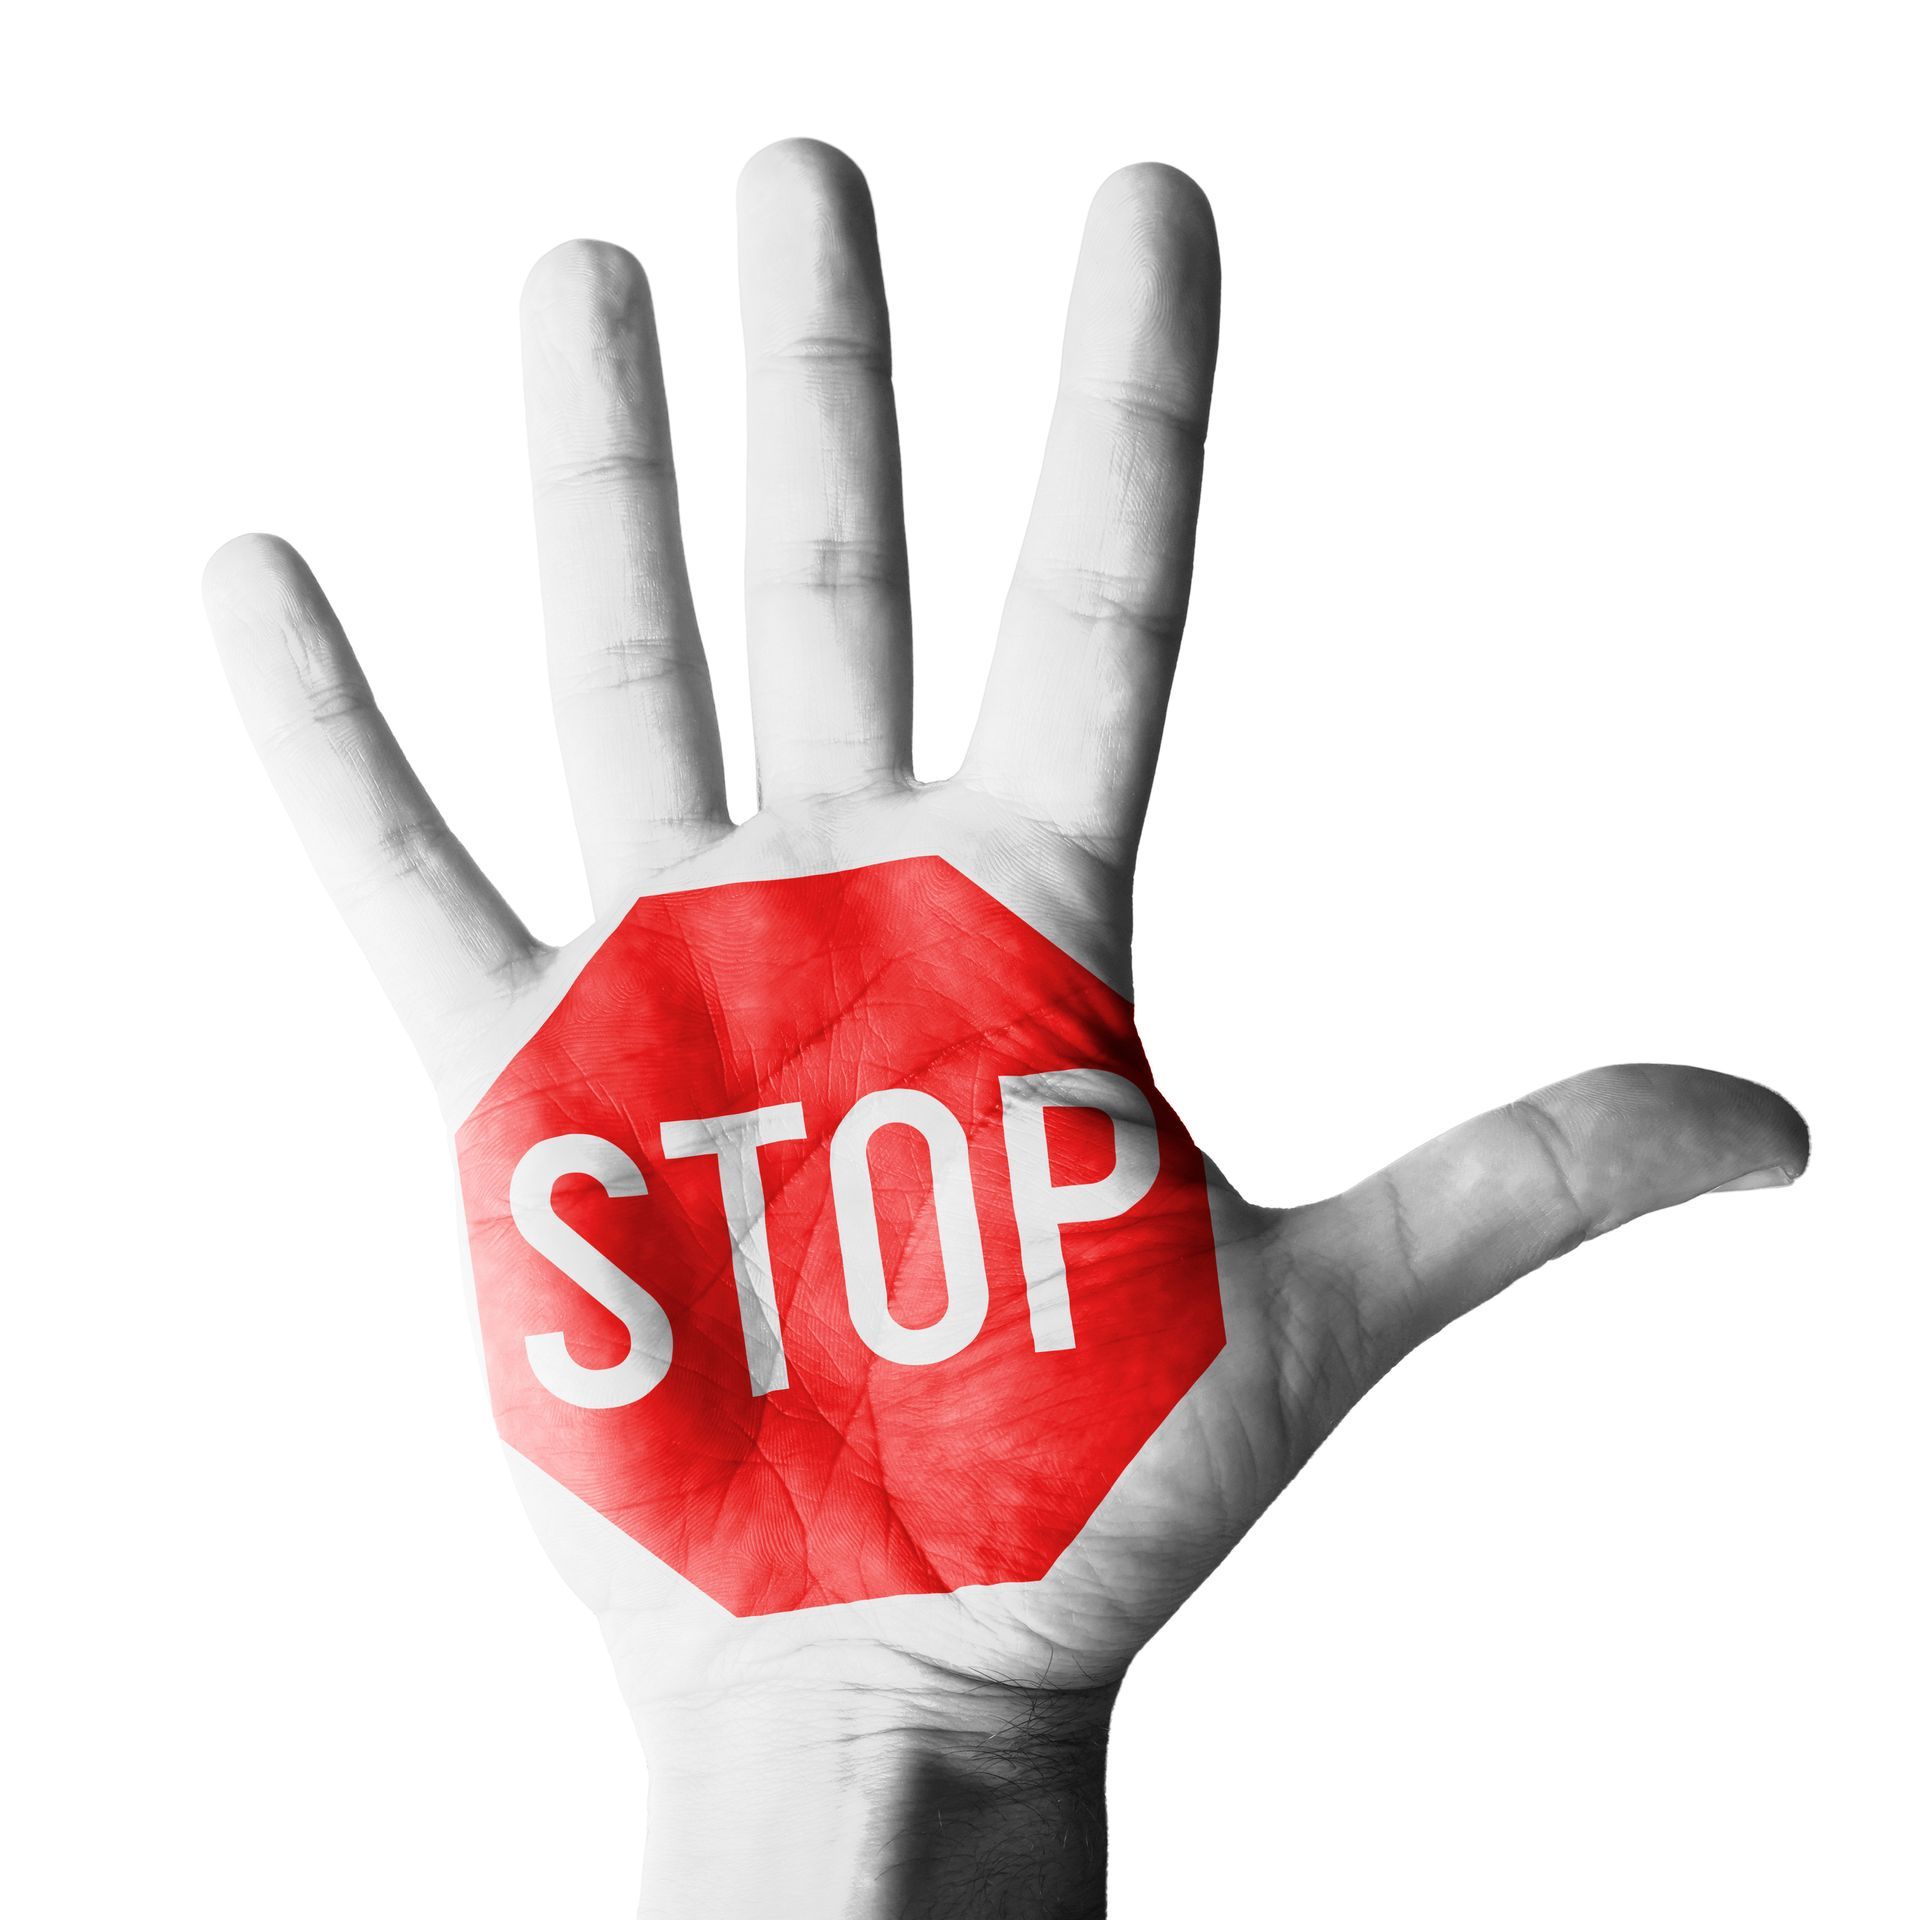 Panneau stop inscrit dans une main ouverte, qui mime l'action de stopper une agression ou un assaillant